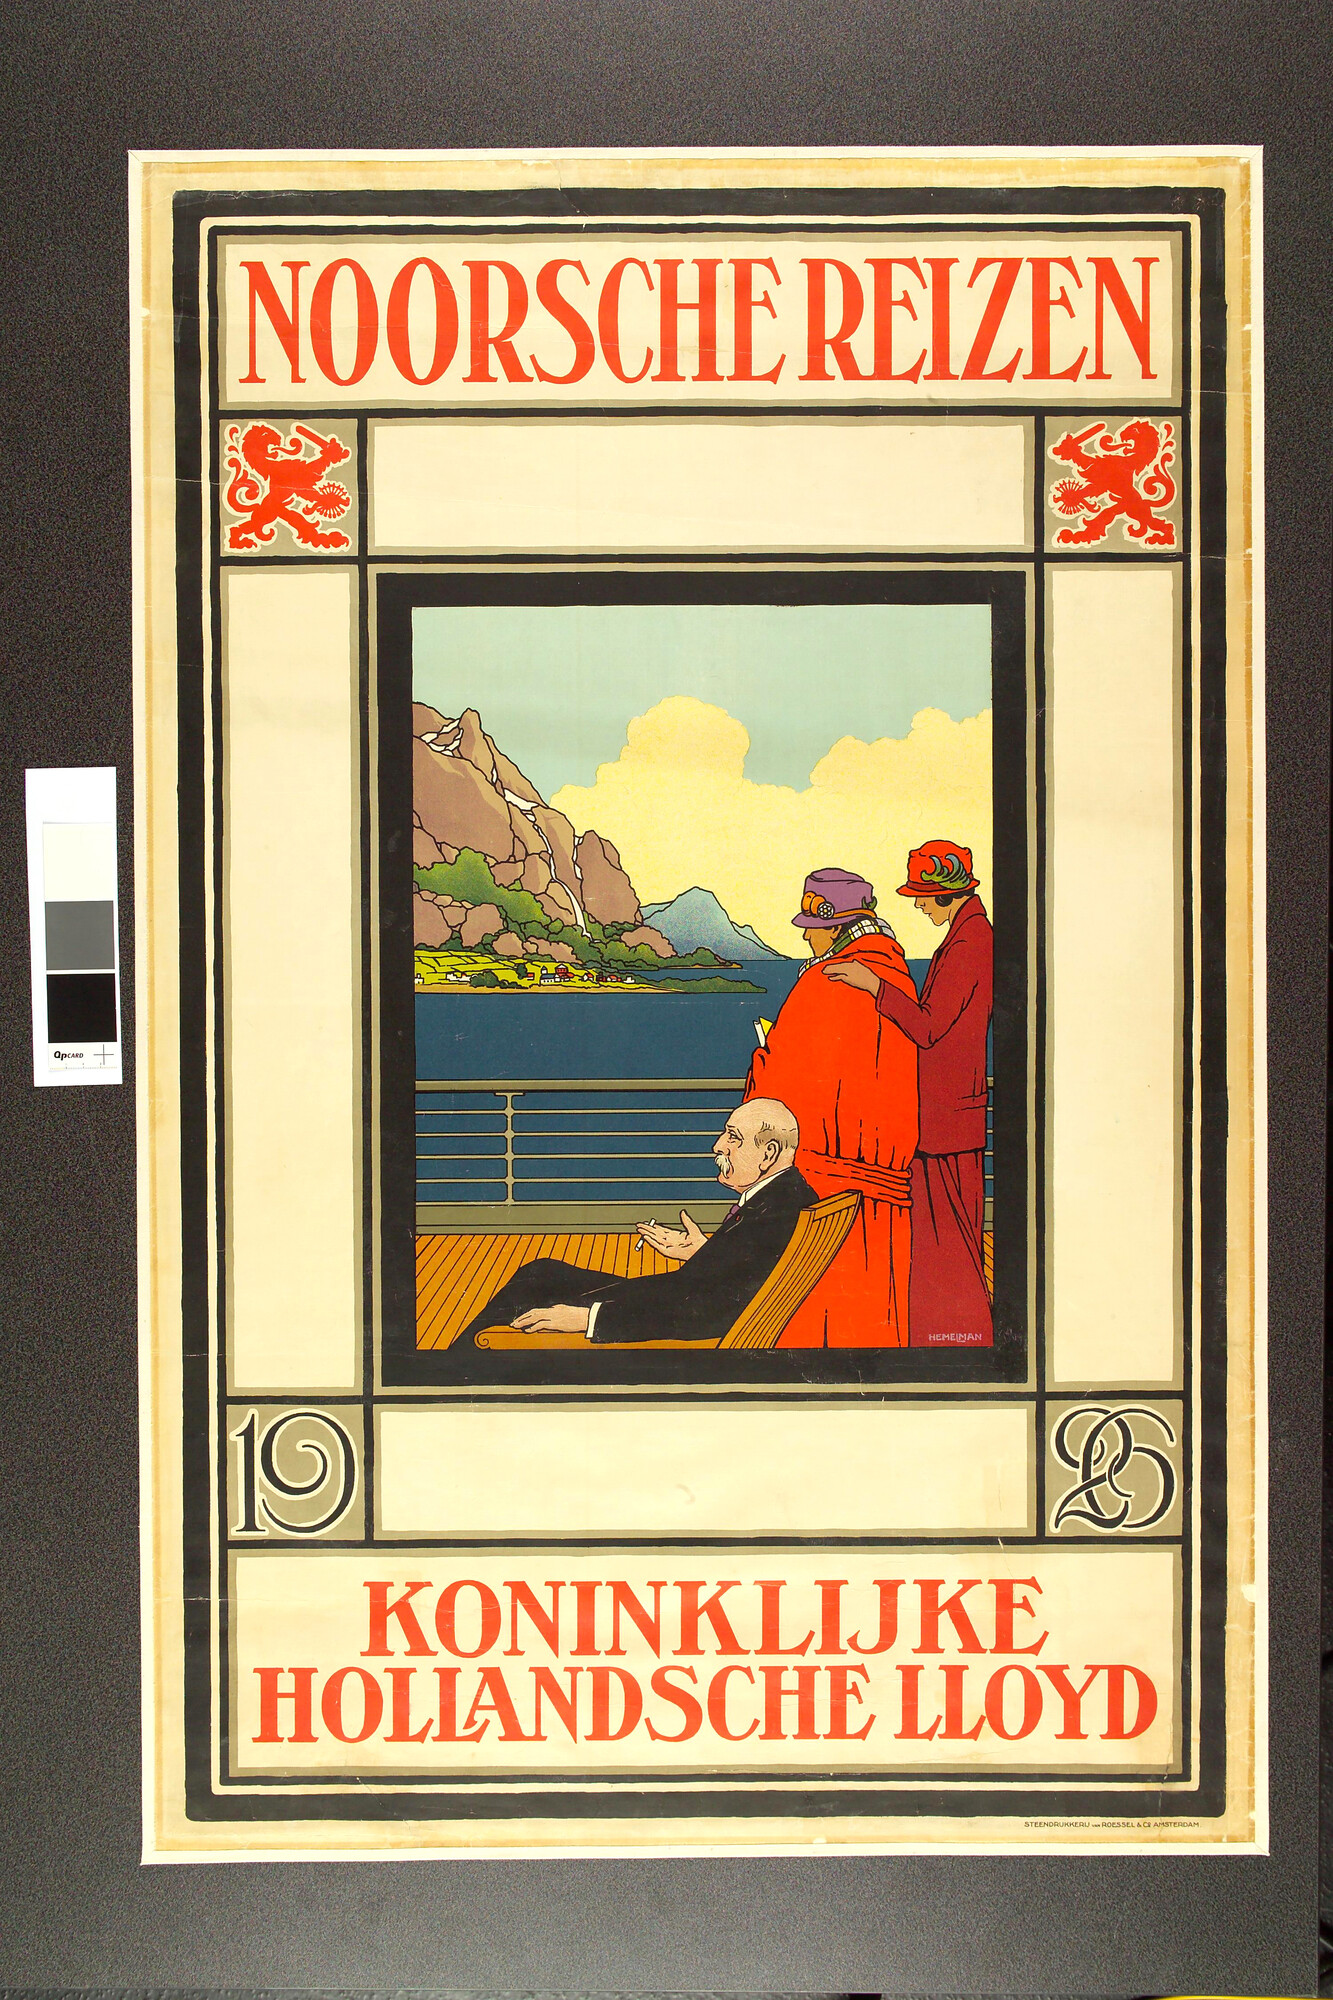 A.5399(02); Affiche van de Koninklijke Hollandsche Lloyd voor vakantiereizen (cruises) naar en in Noorwegen; affiche